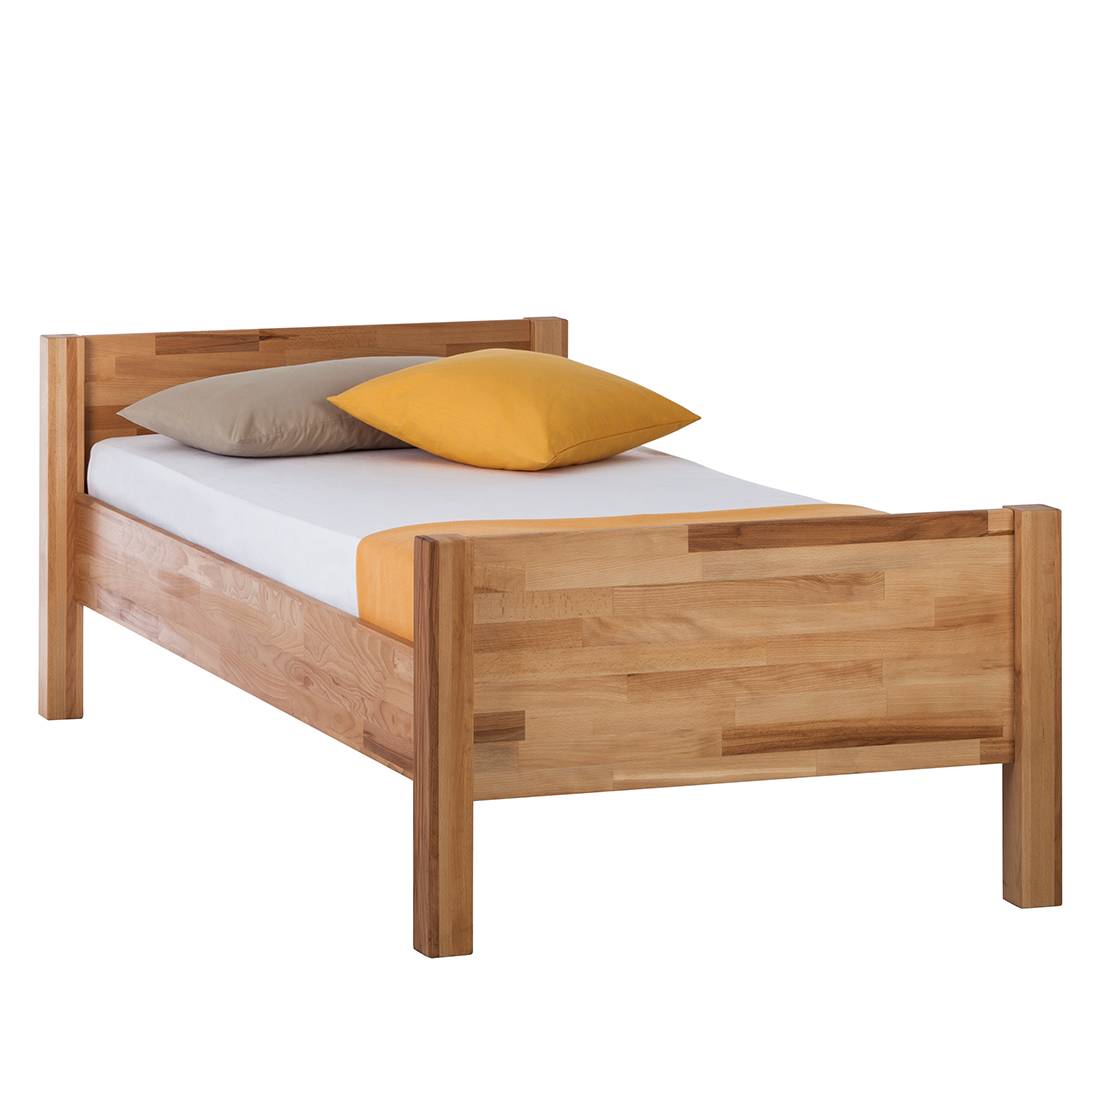 Afscheiden dief Uitgaan Massief houten bed JohnWOOD kopen | home24